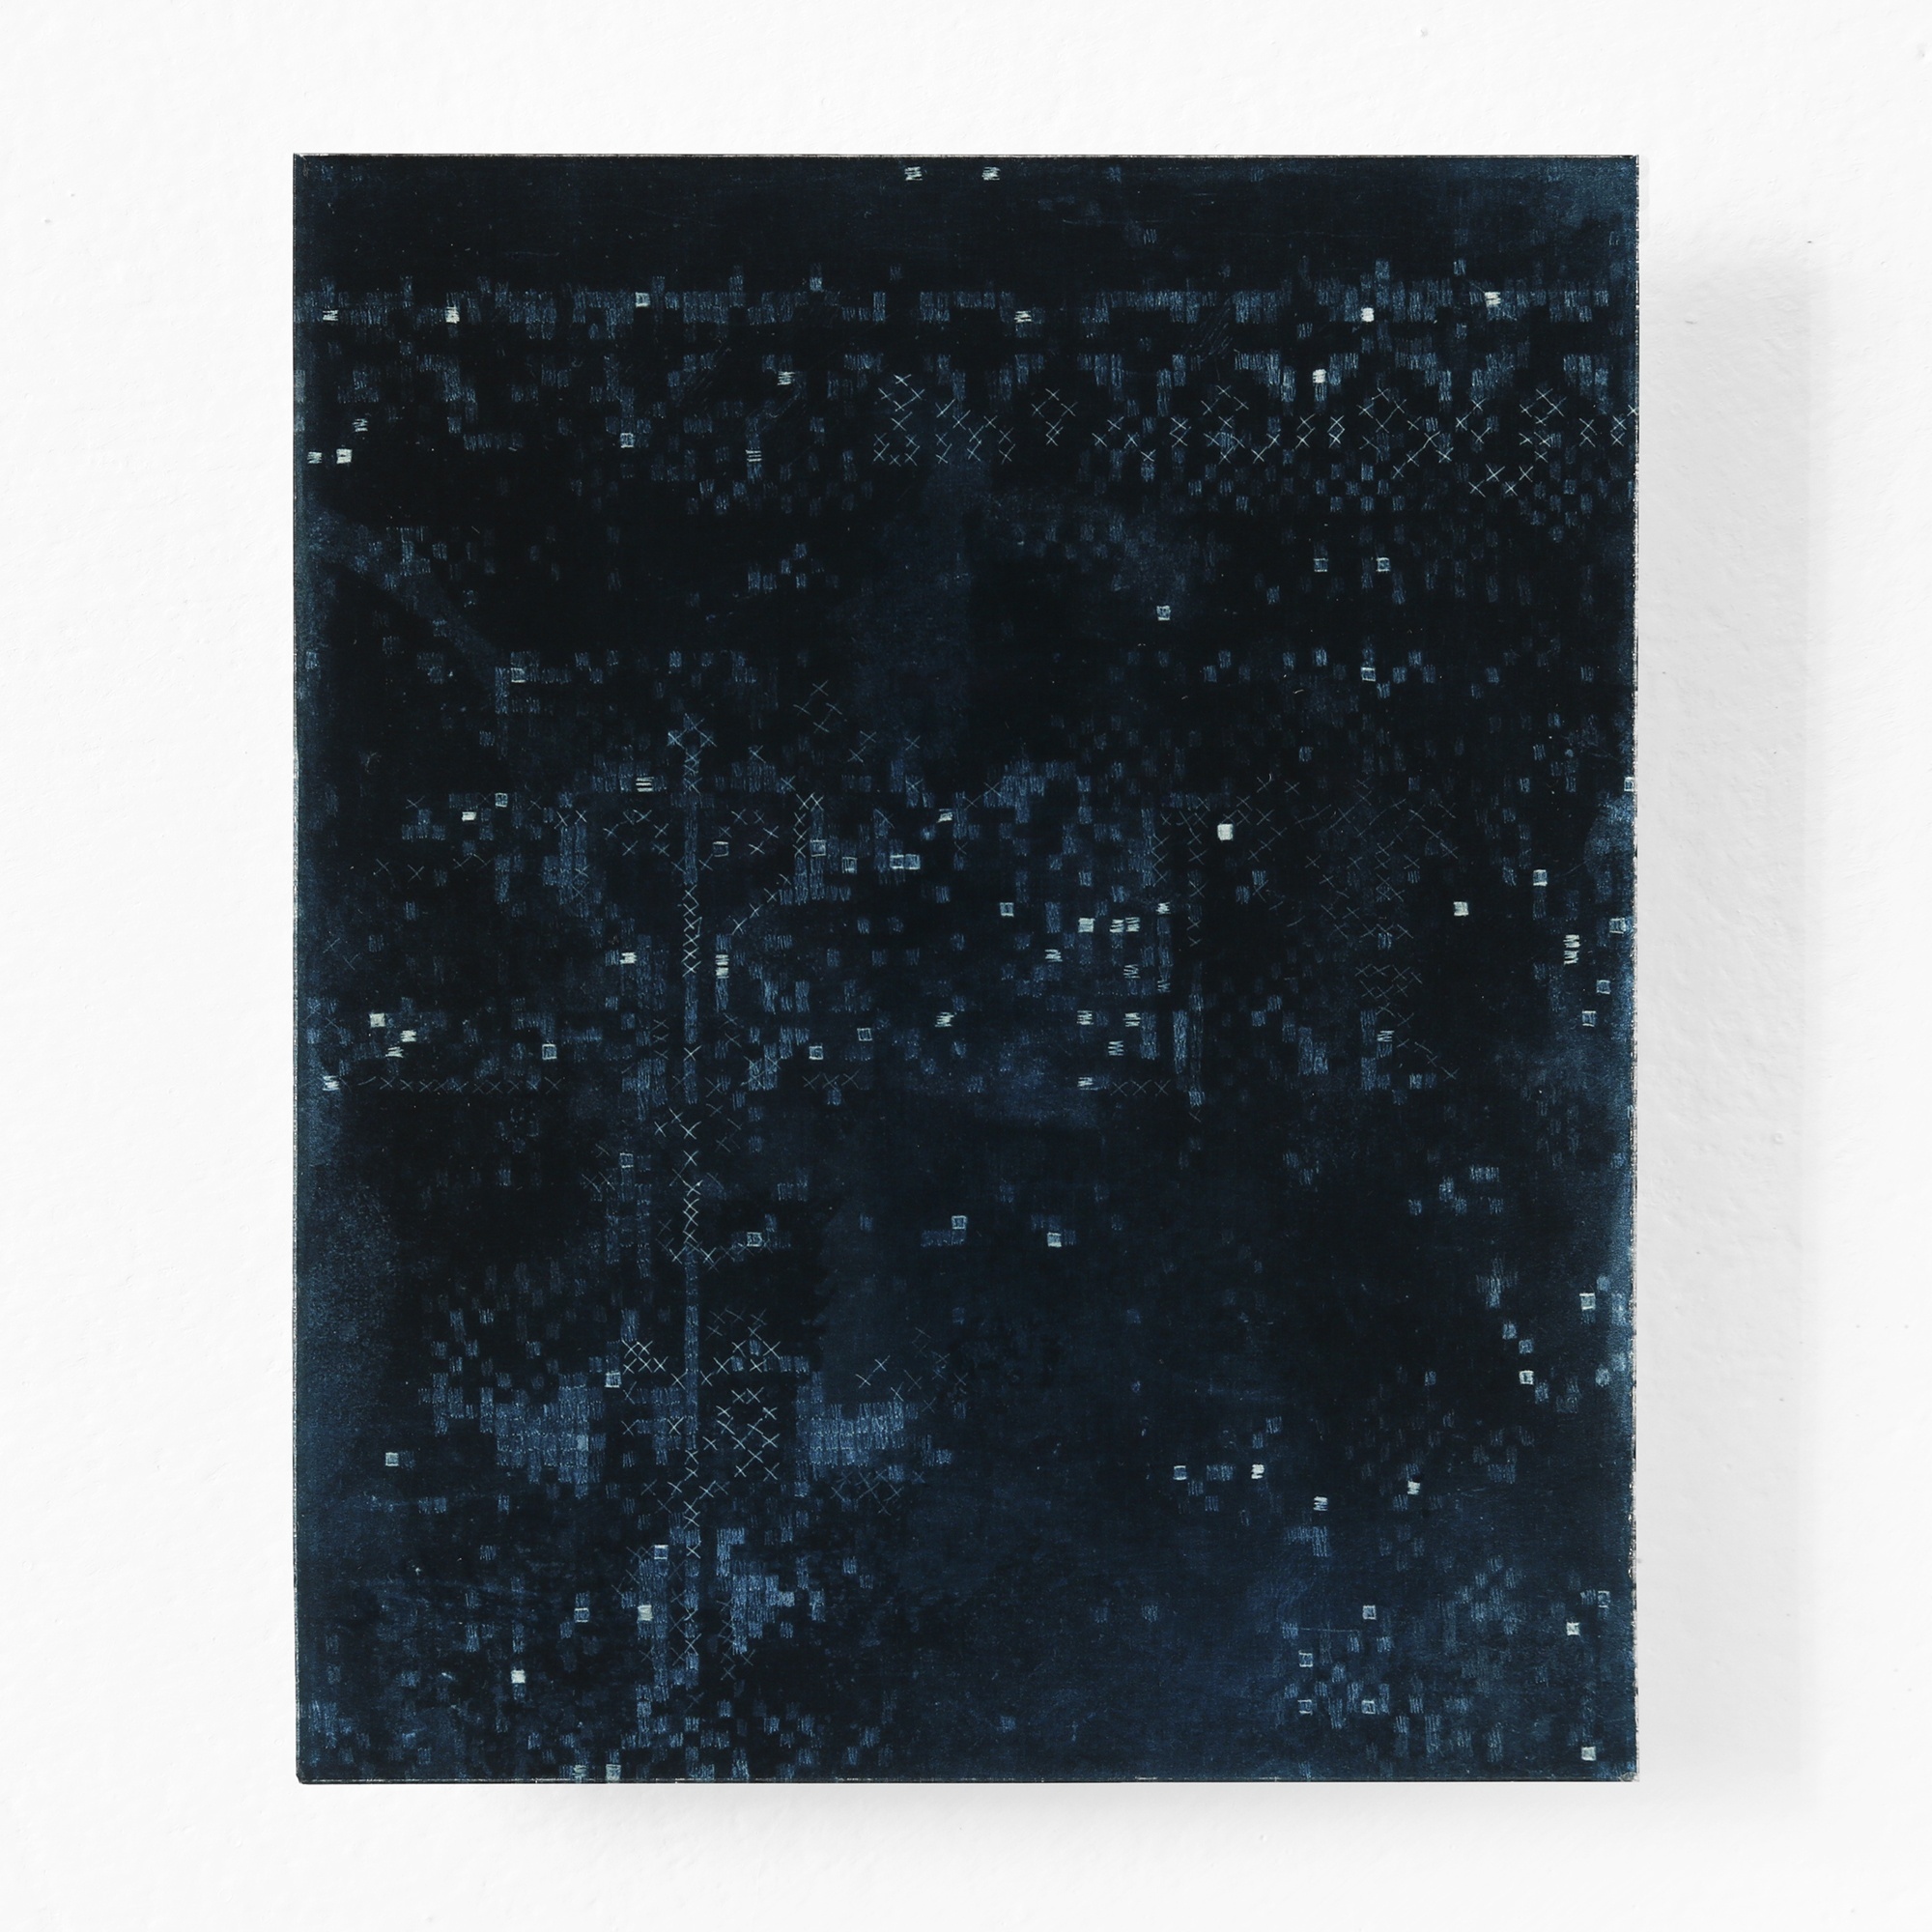 KÄTHE V, 2018  - UV-print on glass, 5.9 x 4.8 in. / 15 x 12,3 cm 